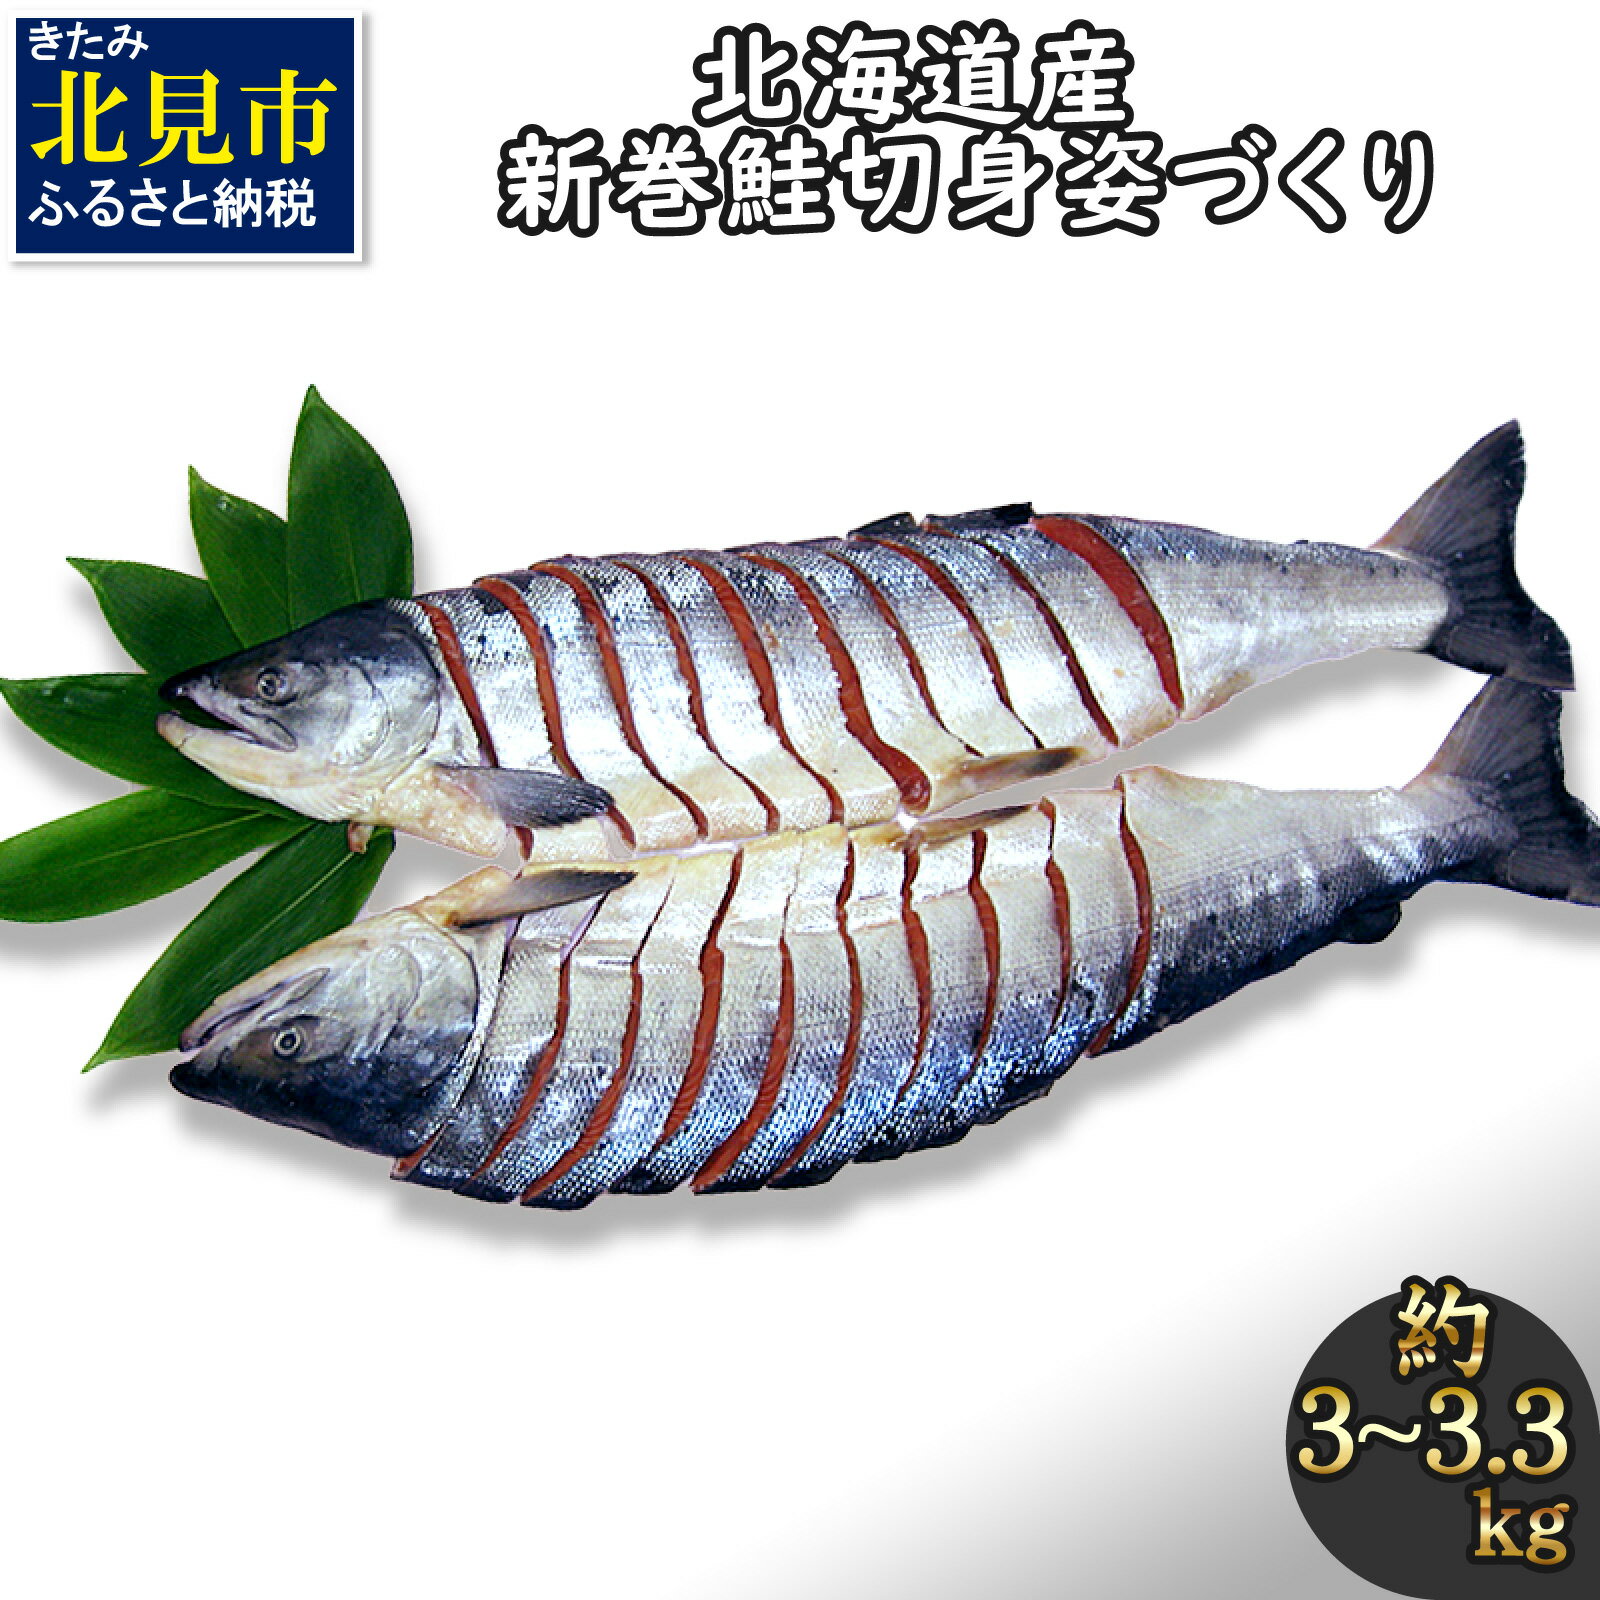 【ふるさと納税】北海道産新巻鮭 オス 切り身姿づくり 約3k